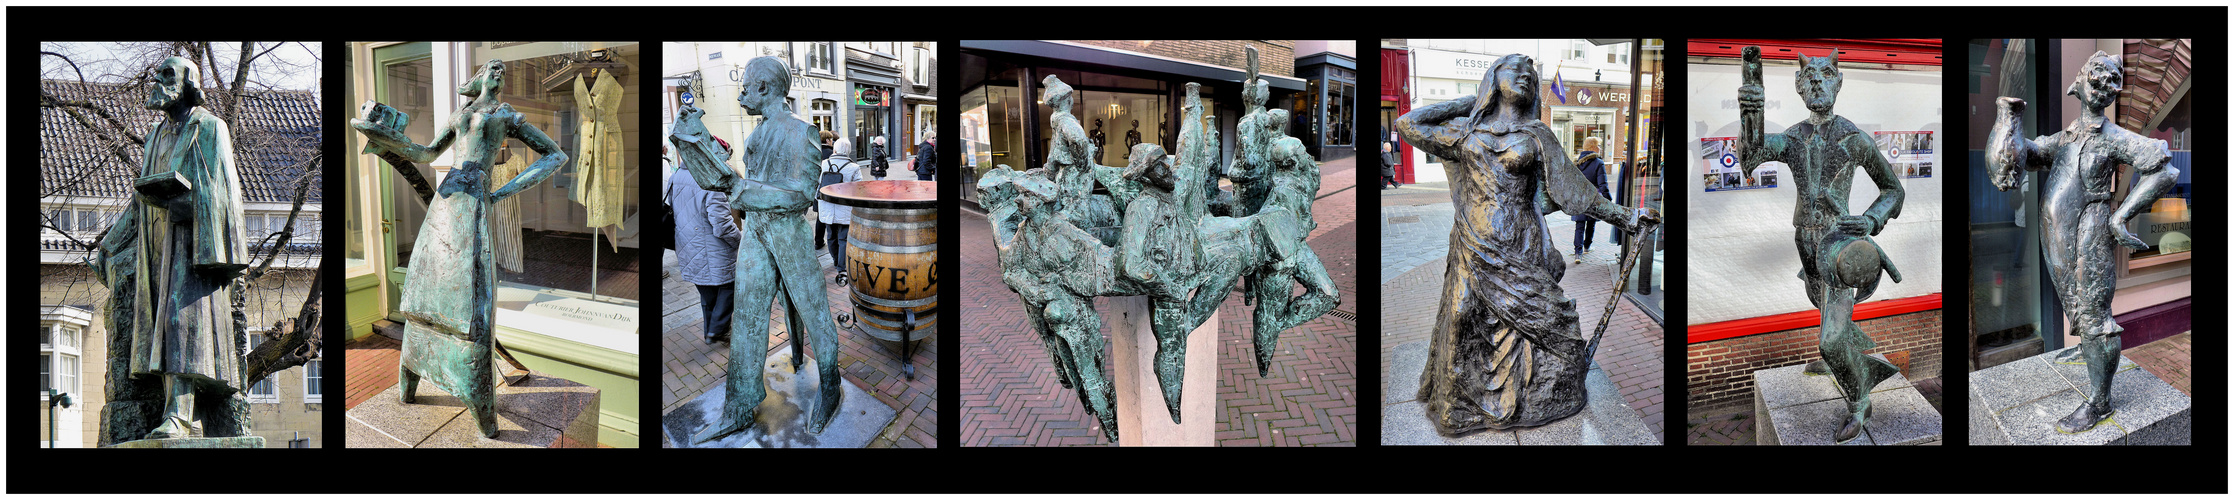 Skulpturen in Roermond